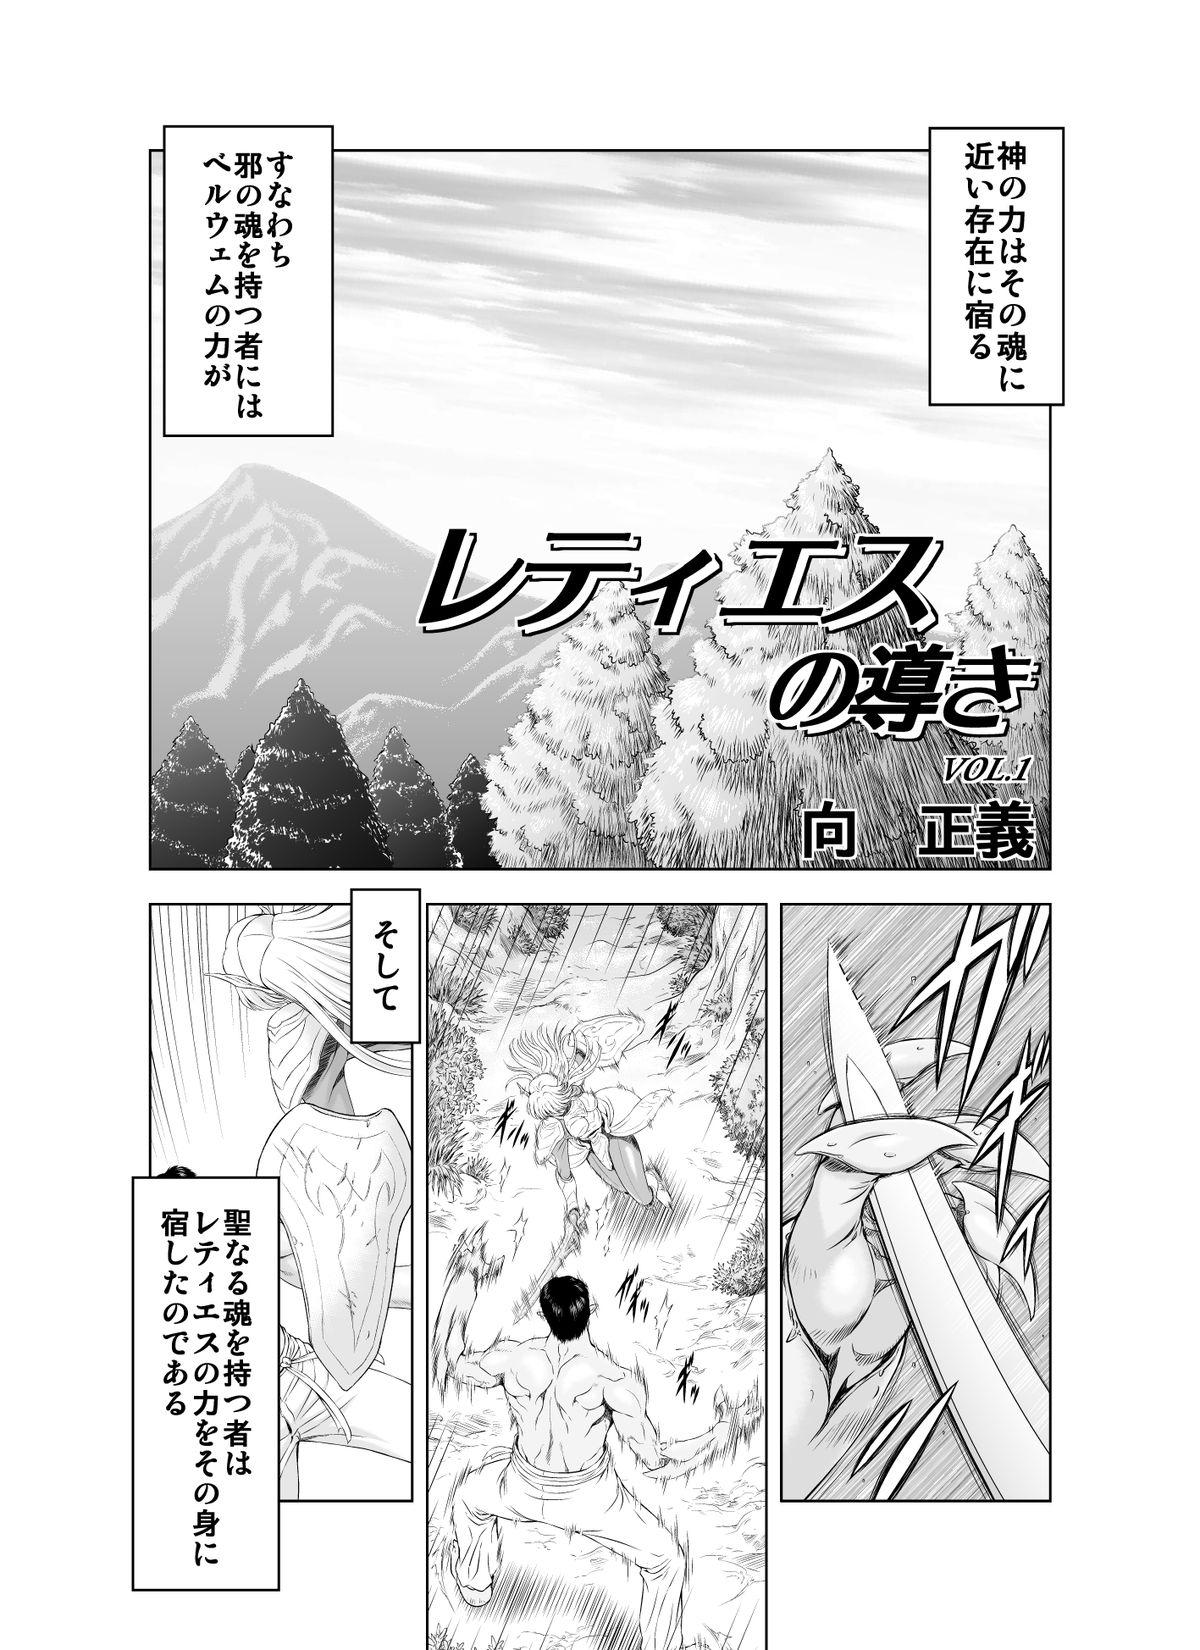 Reties no Michibiki Vol. 1 1